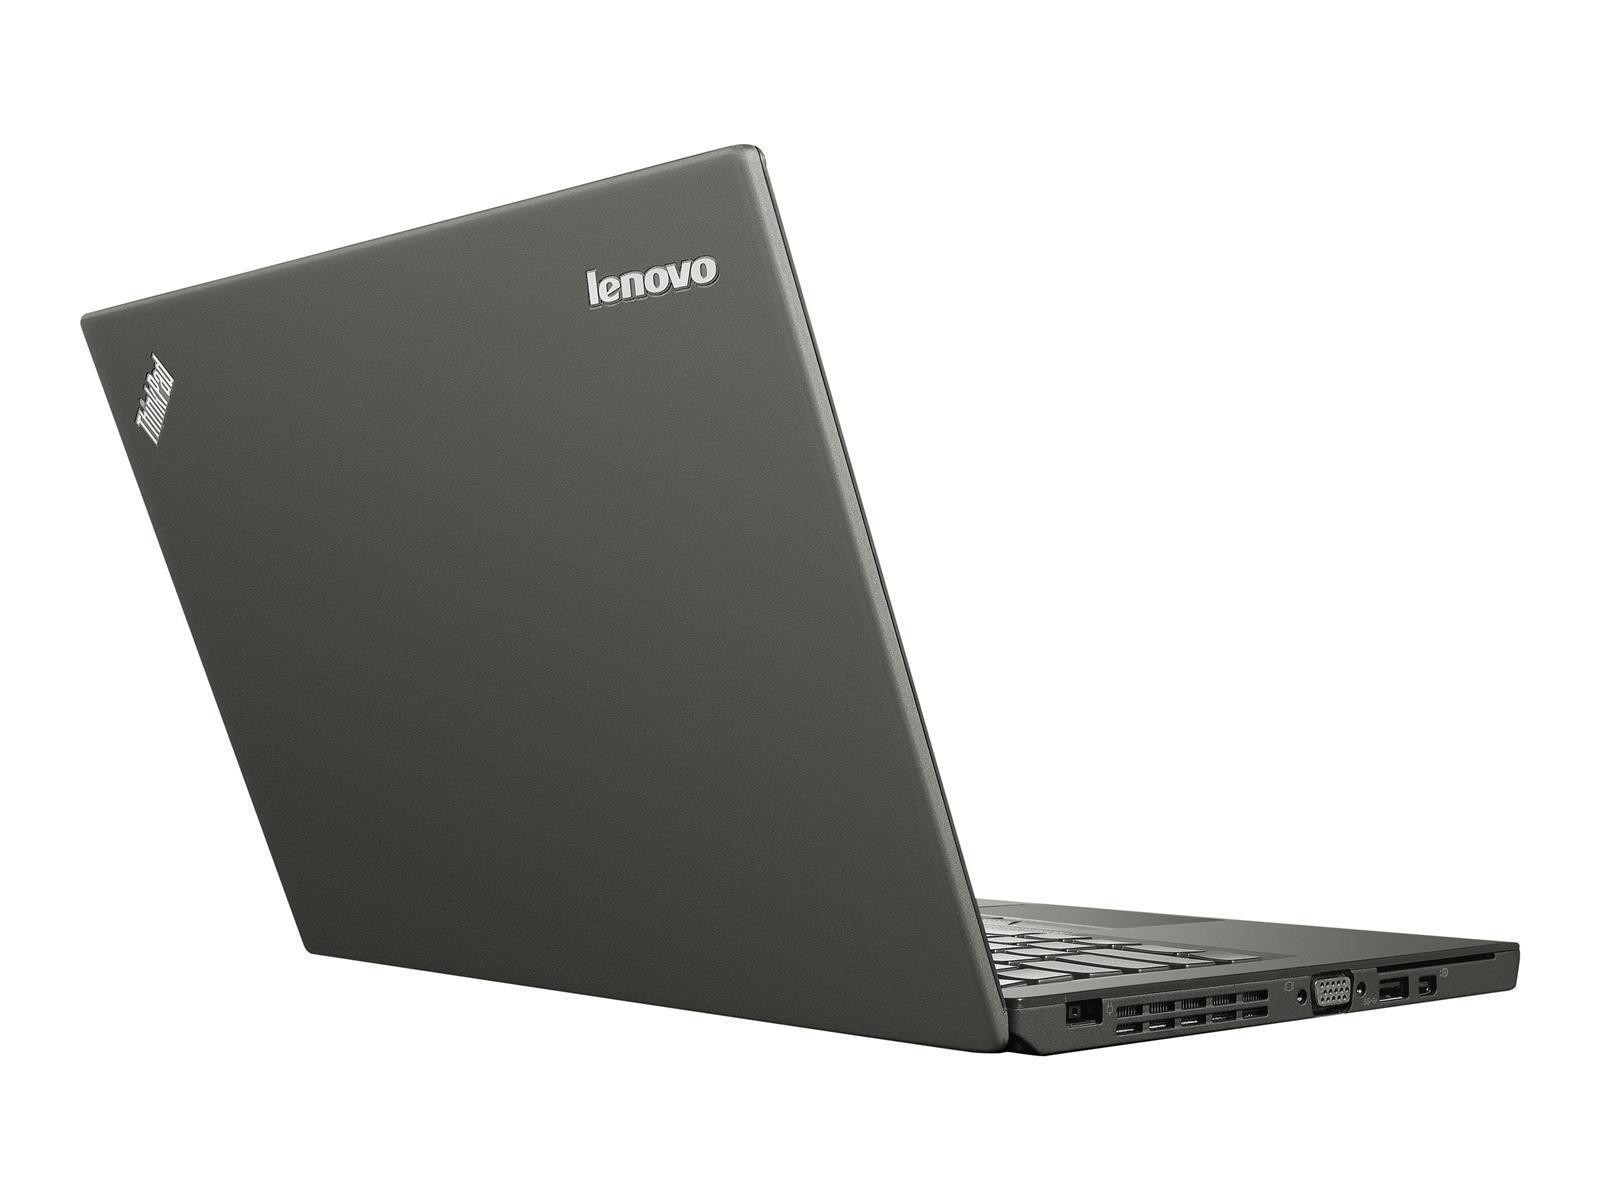 Lenovo ThinkPad X250 Laptop Intel Core i5-5300U 8GB RAM 256GB SSD HD Win 10 Pro DE